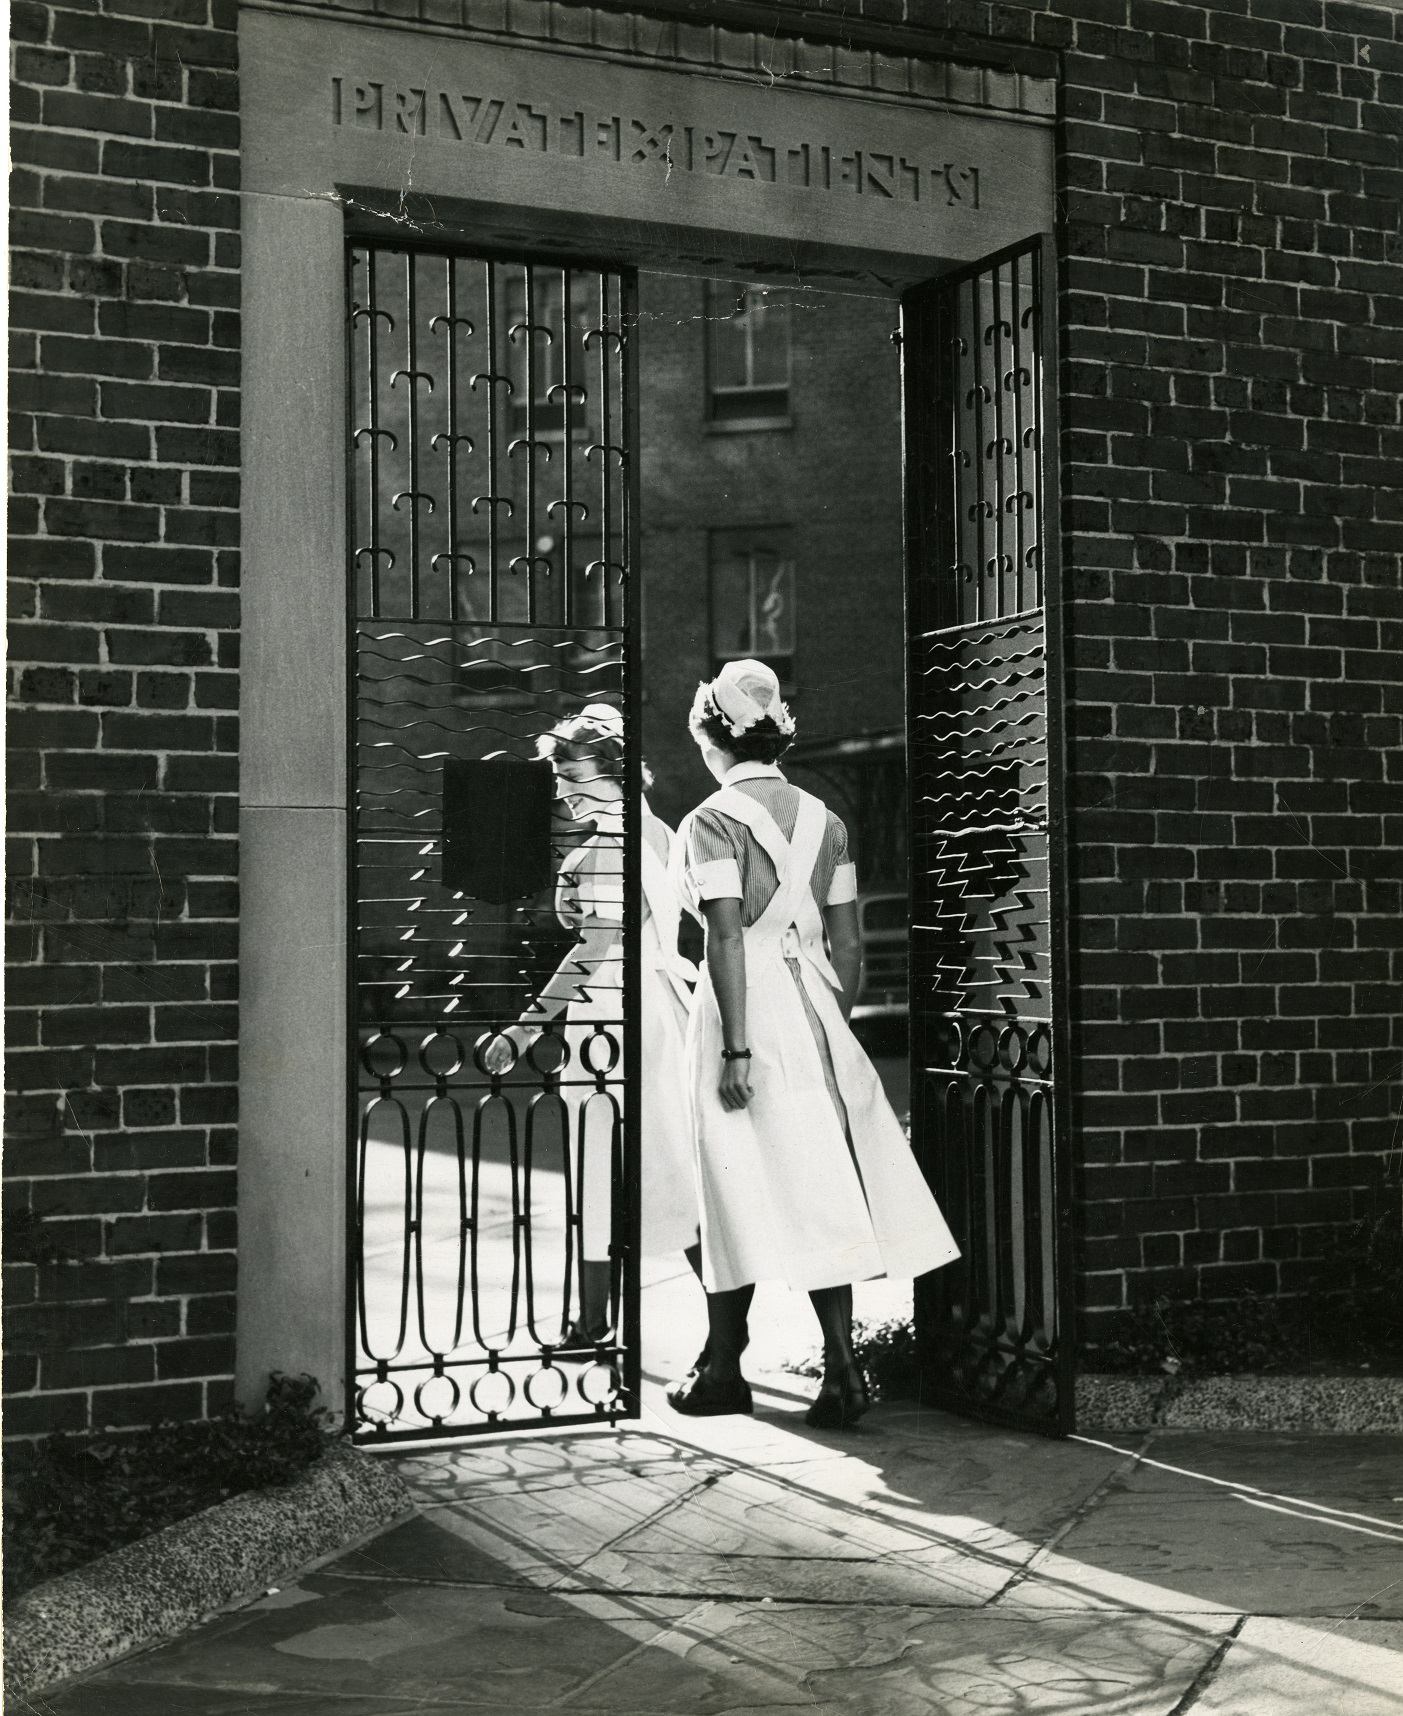 Nursing students entering private patients gates ca 1940s